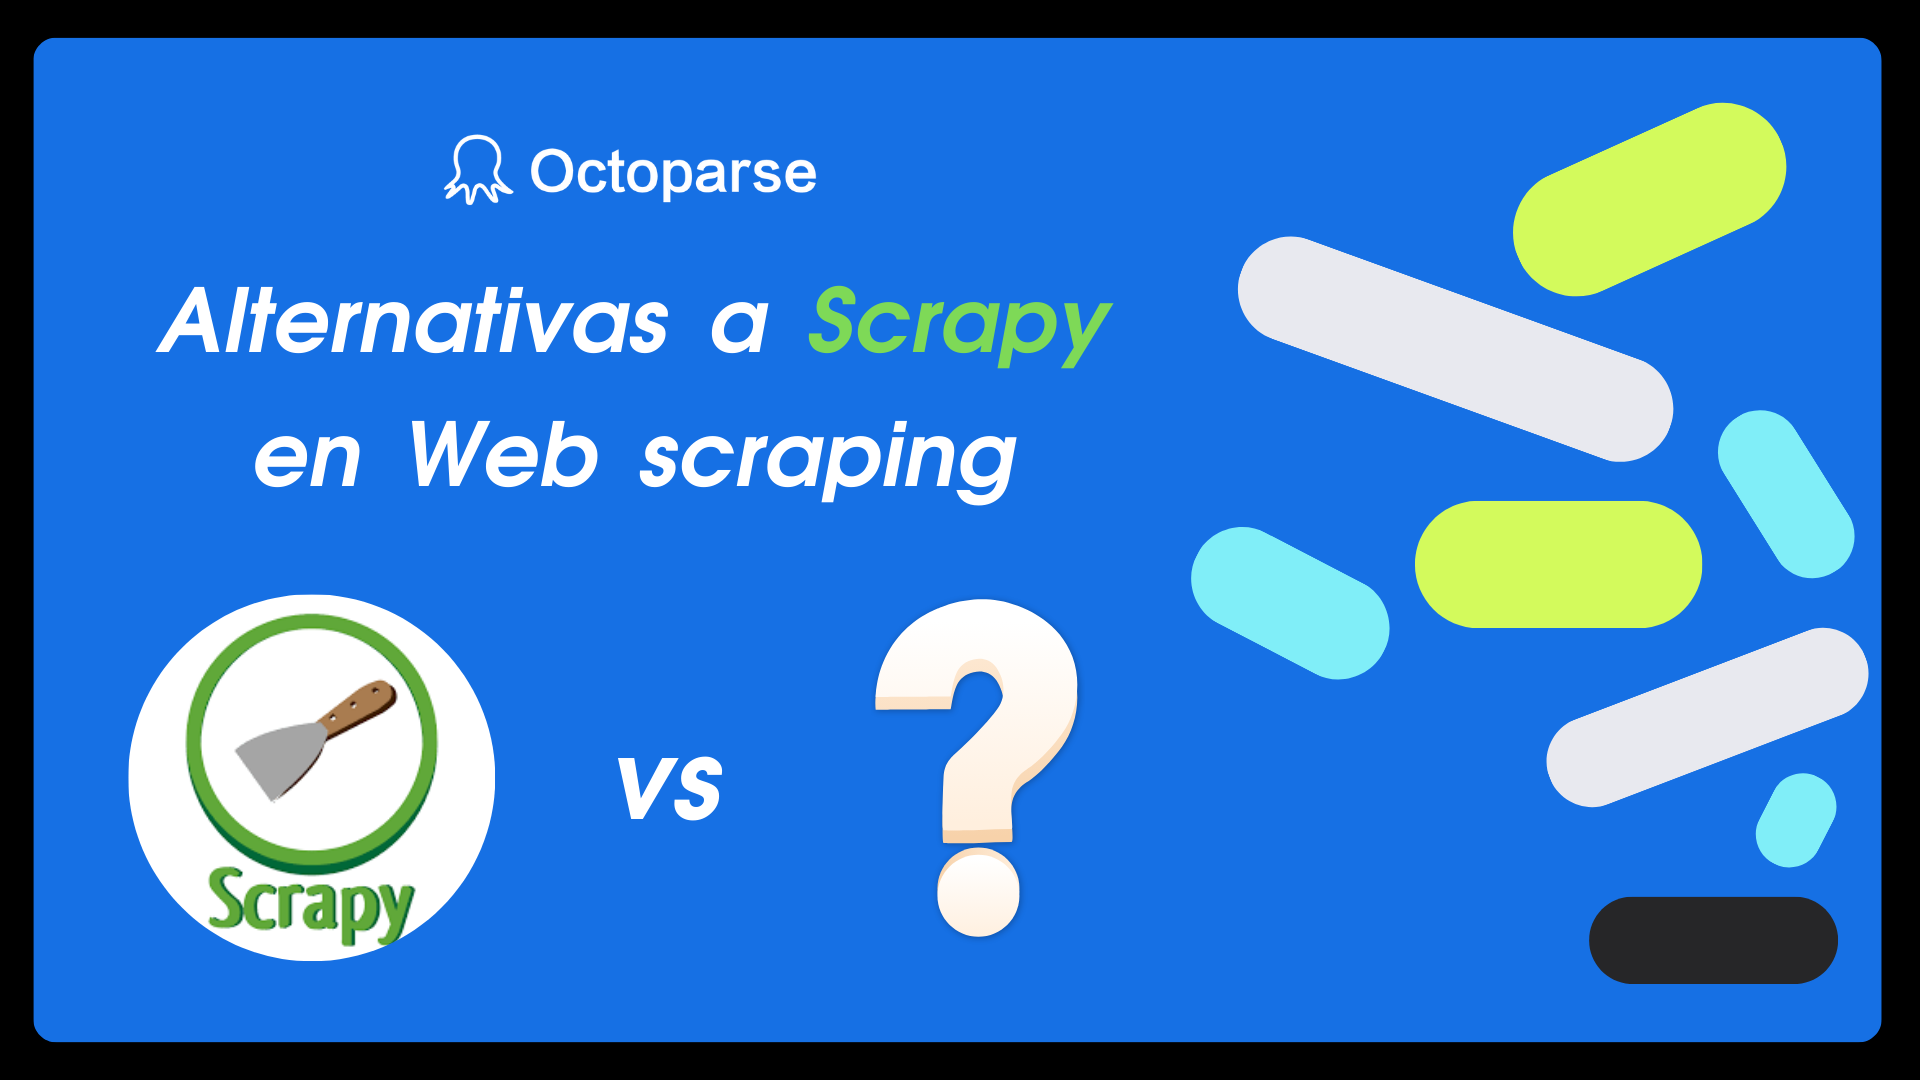 Scrapy Alternativas en web scraping